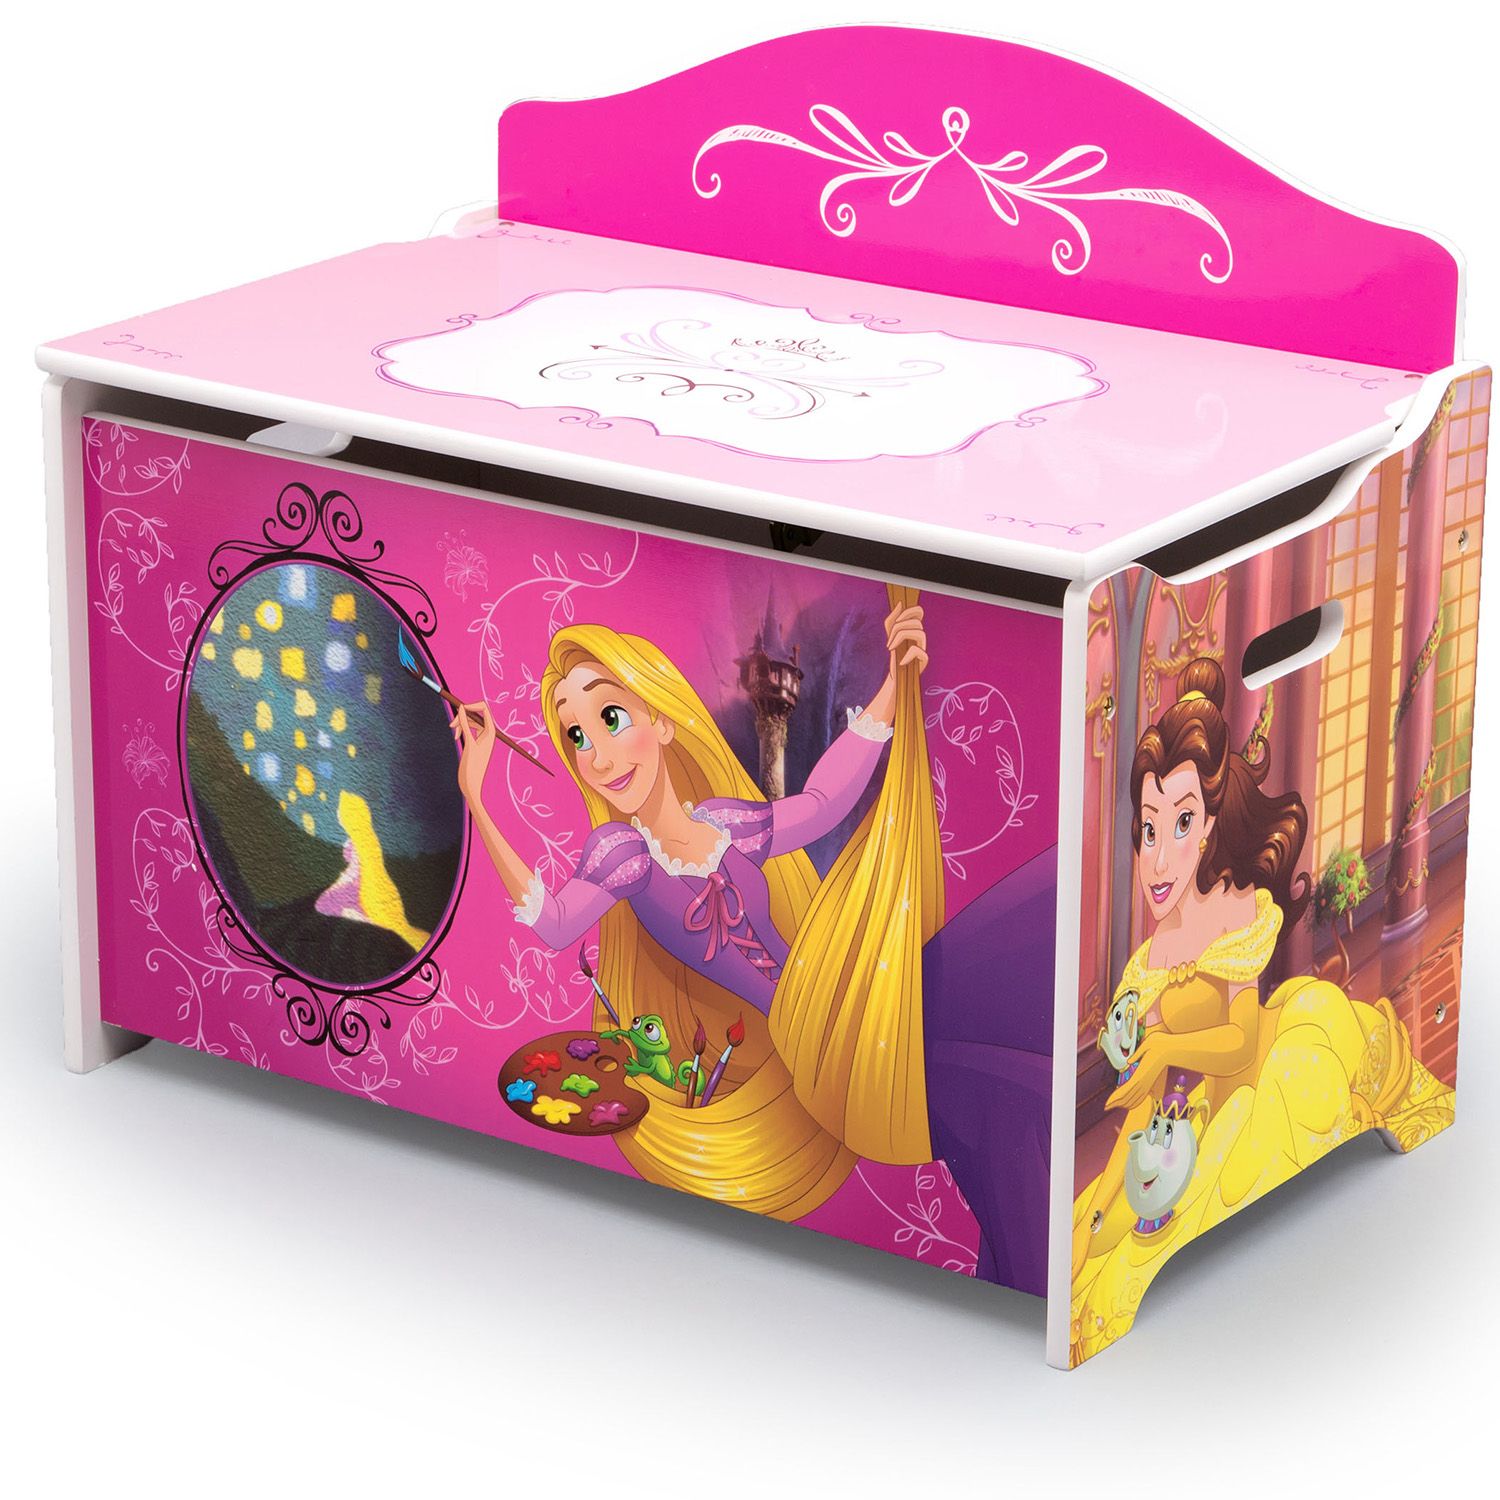 disney princess toy storage